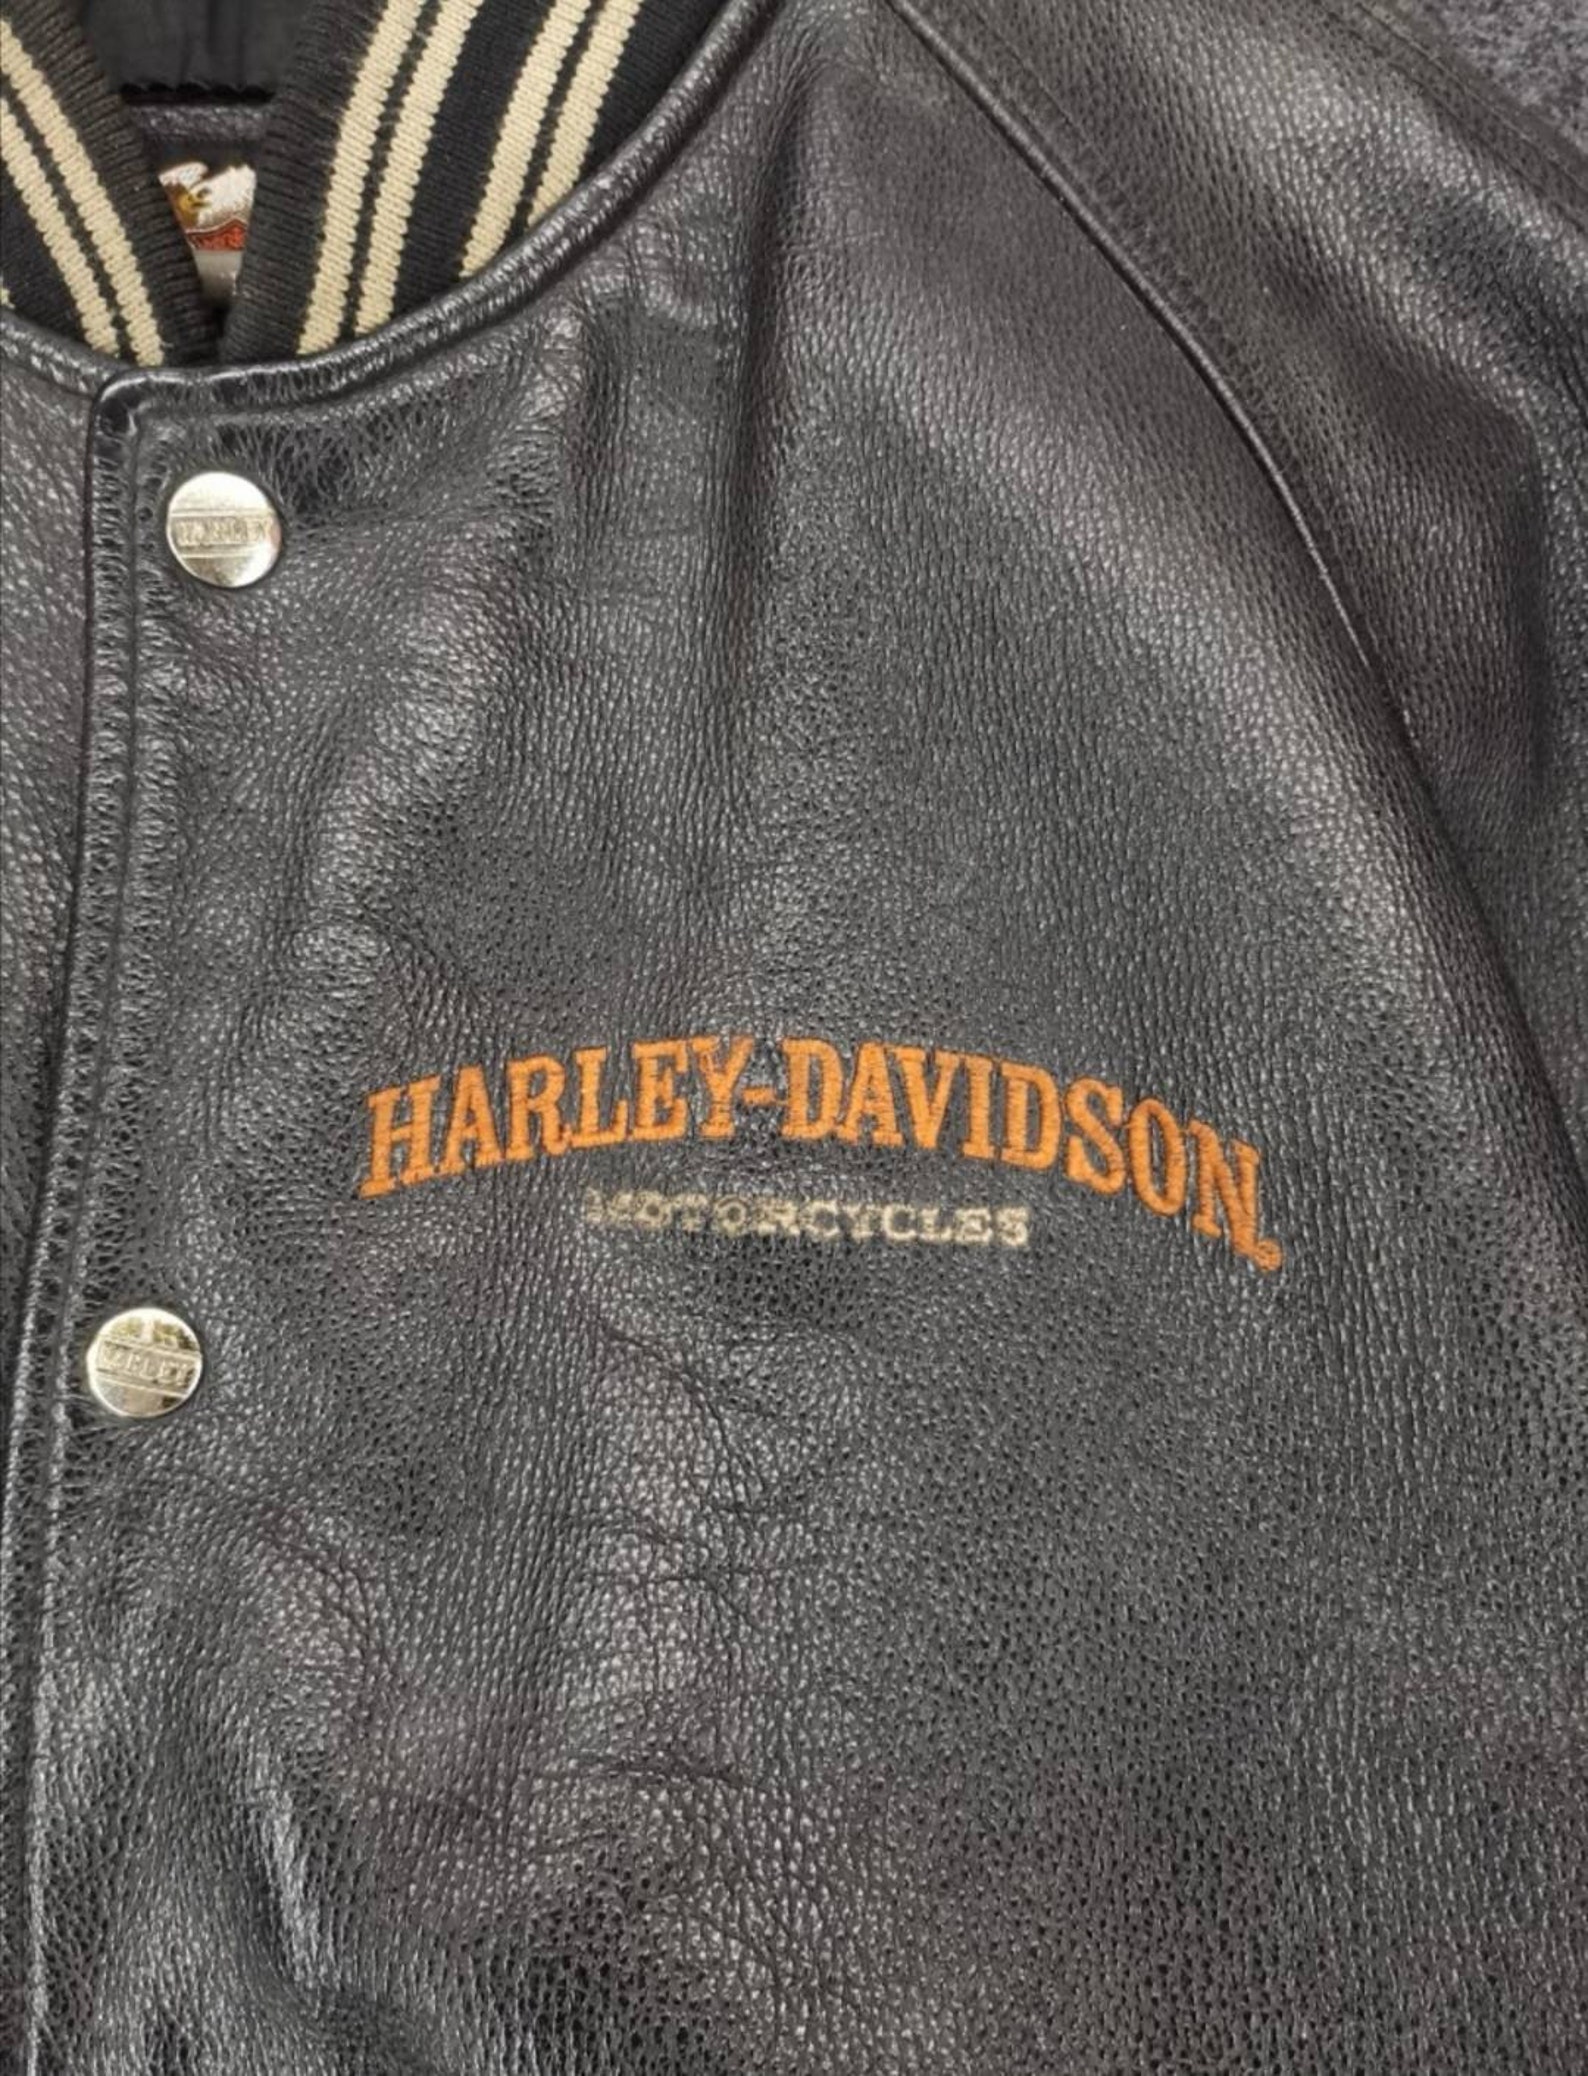 Vintage Harley Davidson Leather Jacket | Etsy